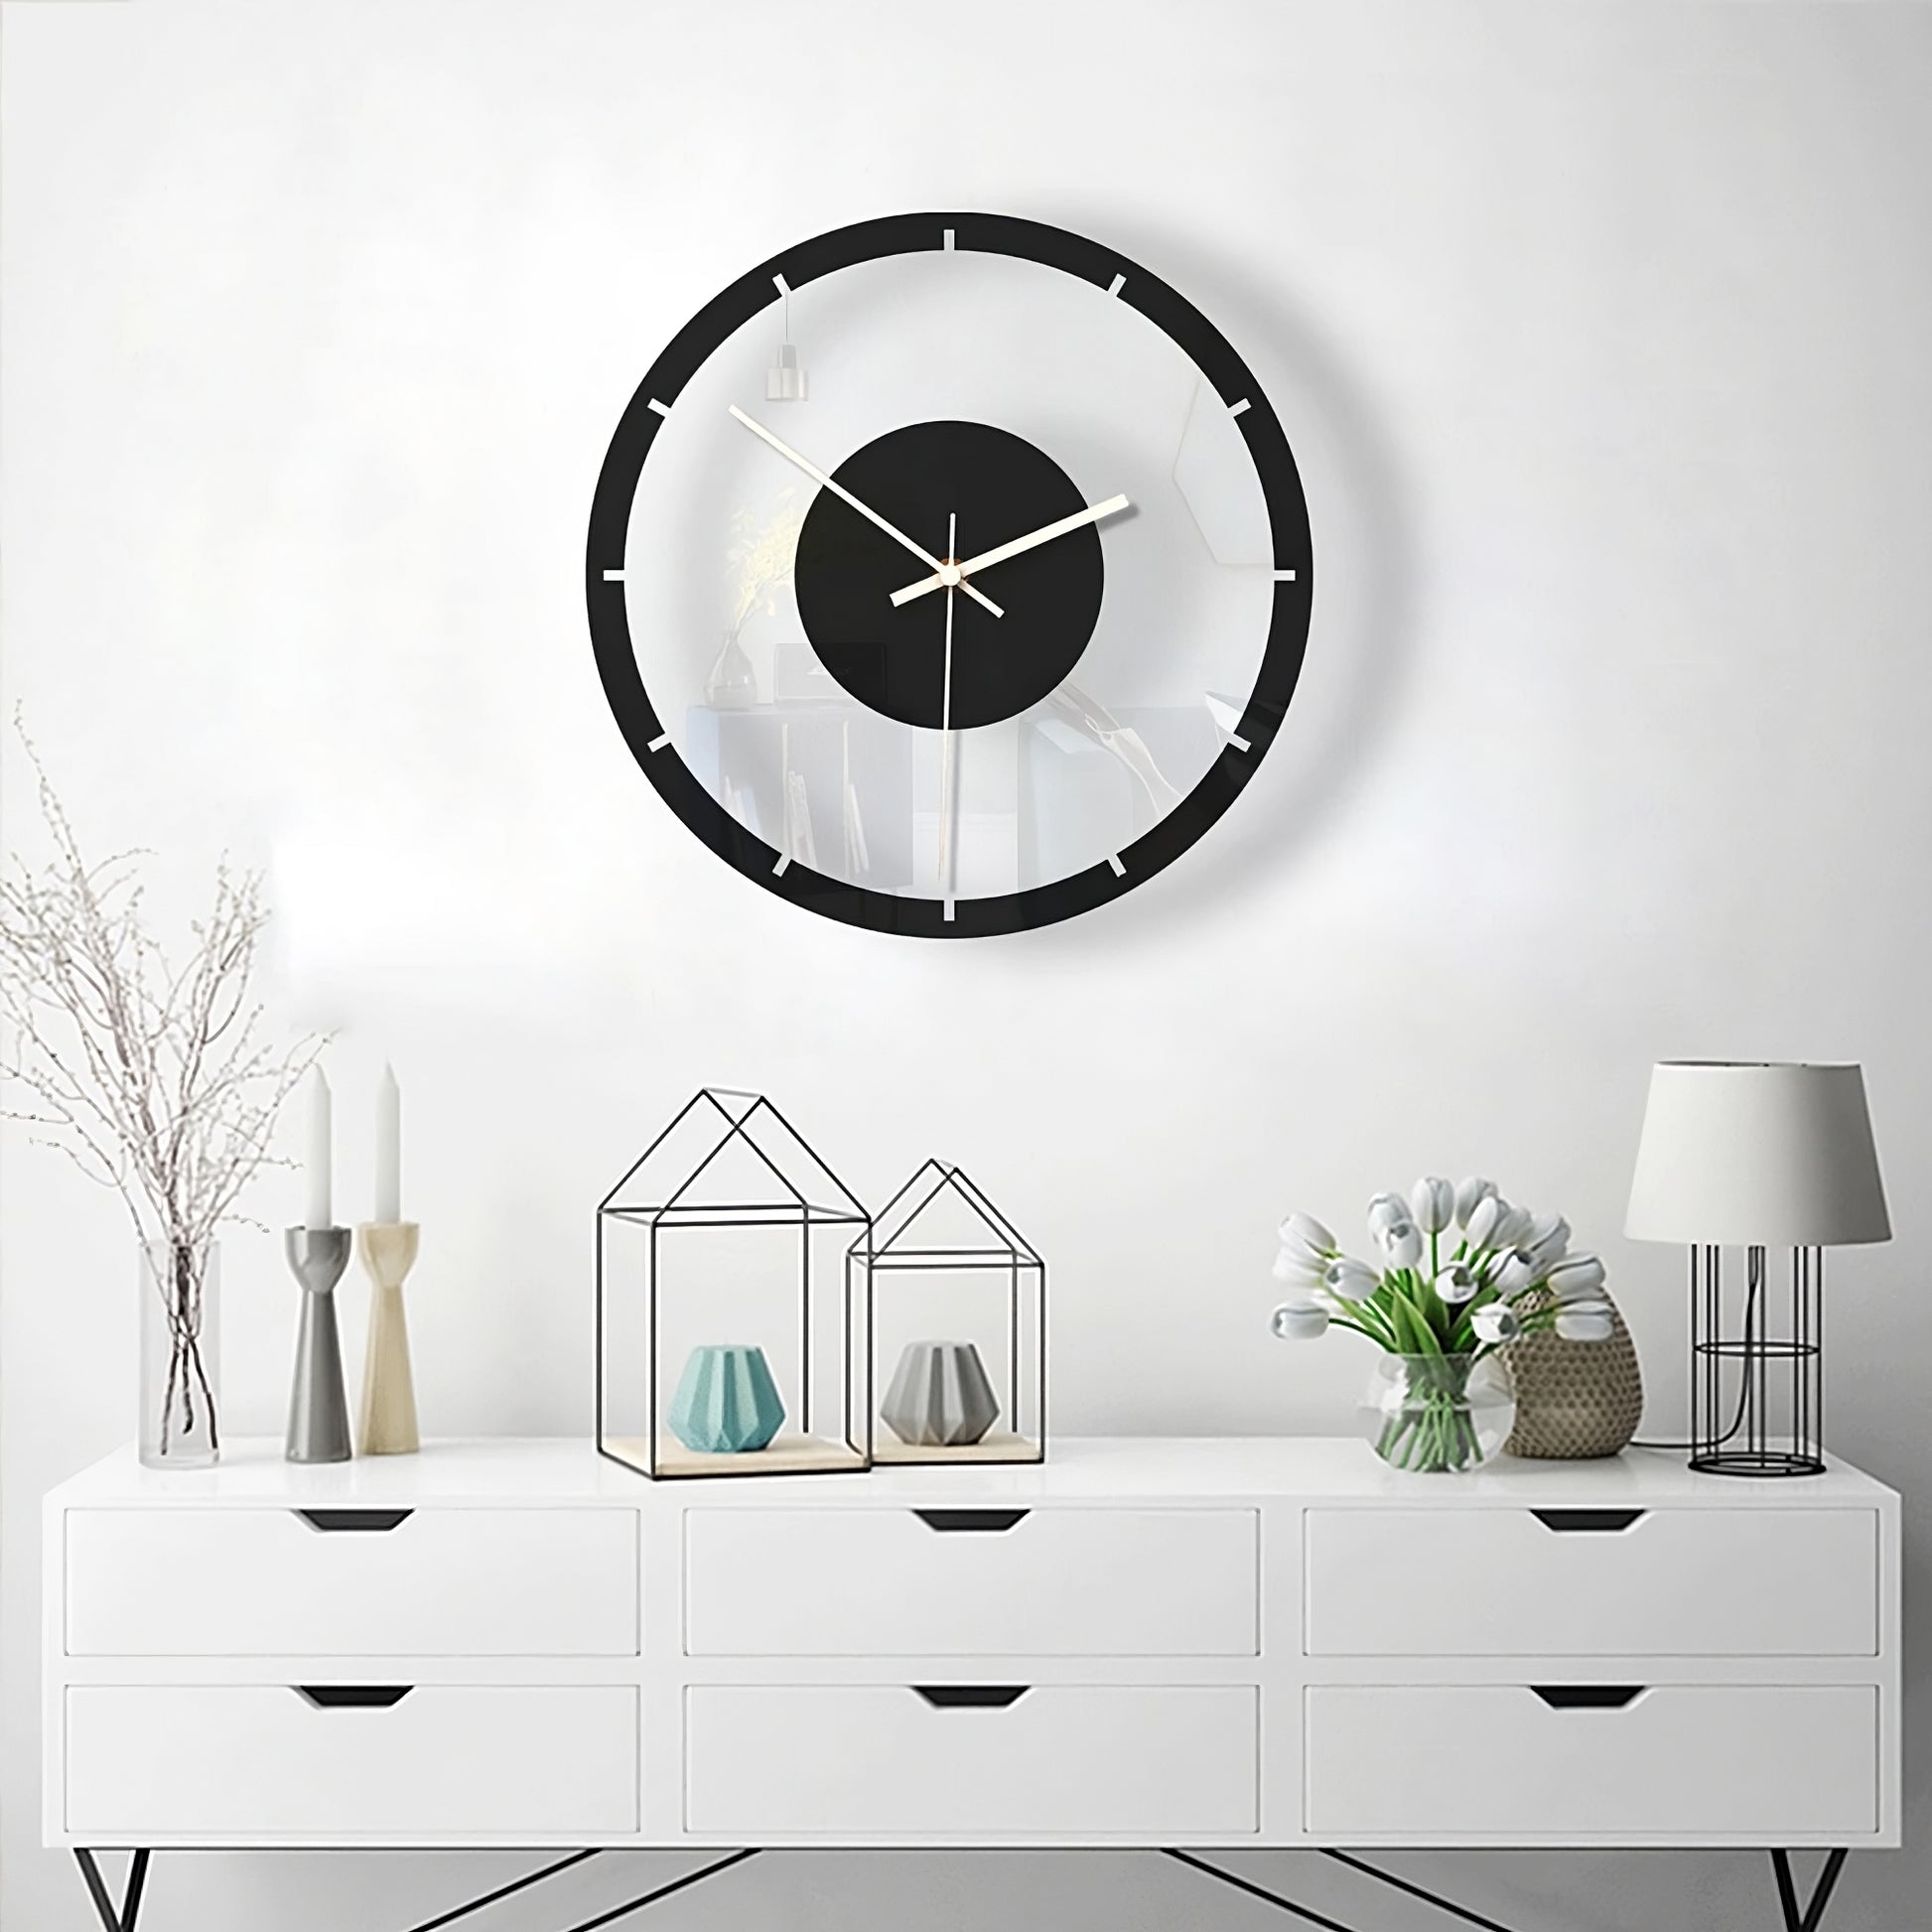 Montaggio Semplice - Orologio Minimal - Aggiungi stile futuristico alla tua casa.